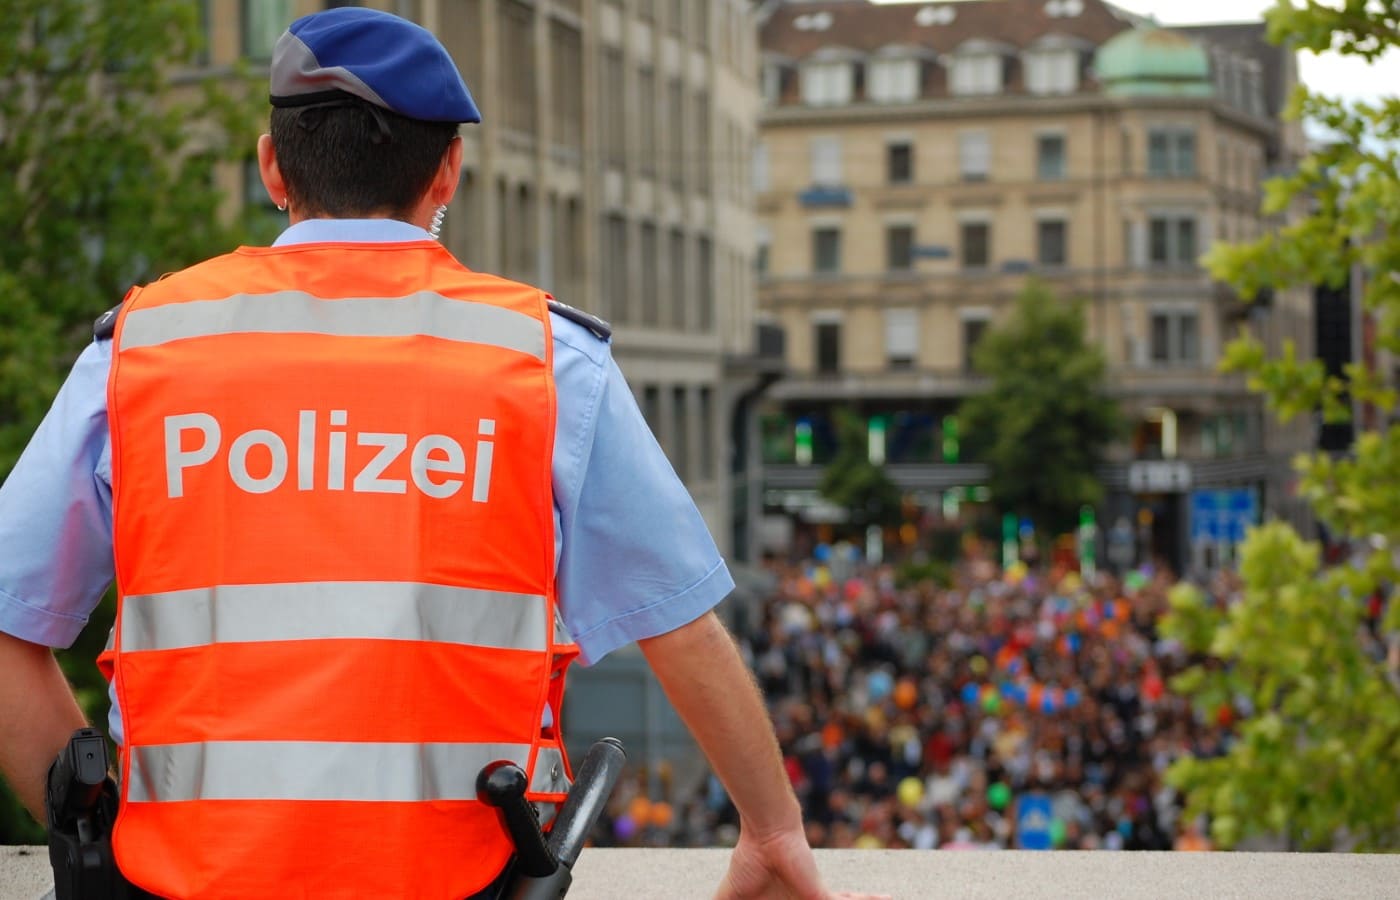 Polizei.news bringt aktuelle Polizeinachrichten aus dem Kanton Luzern